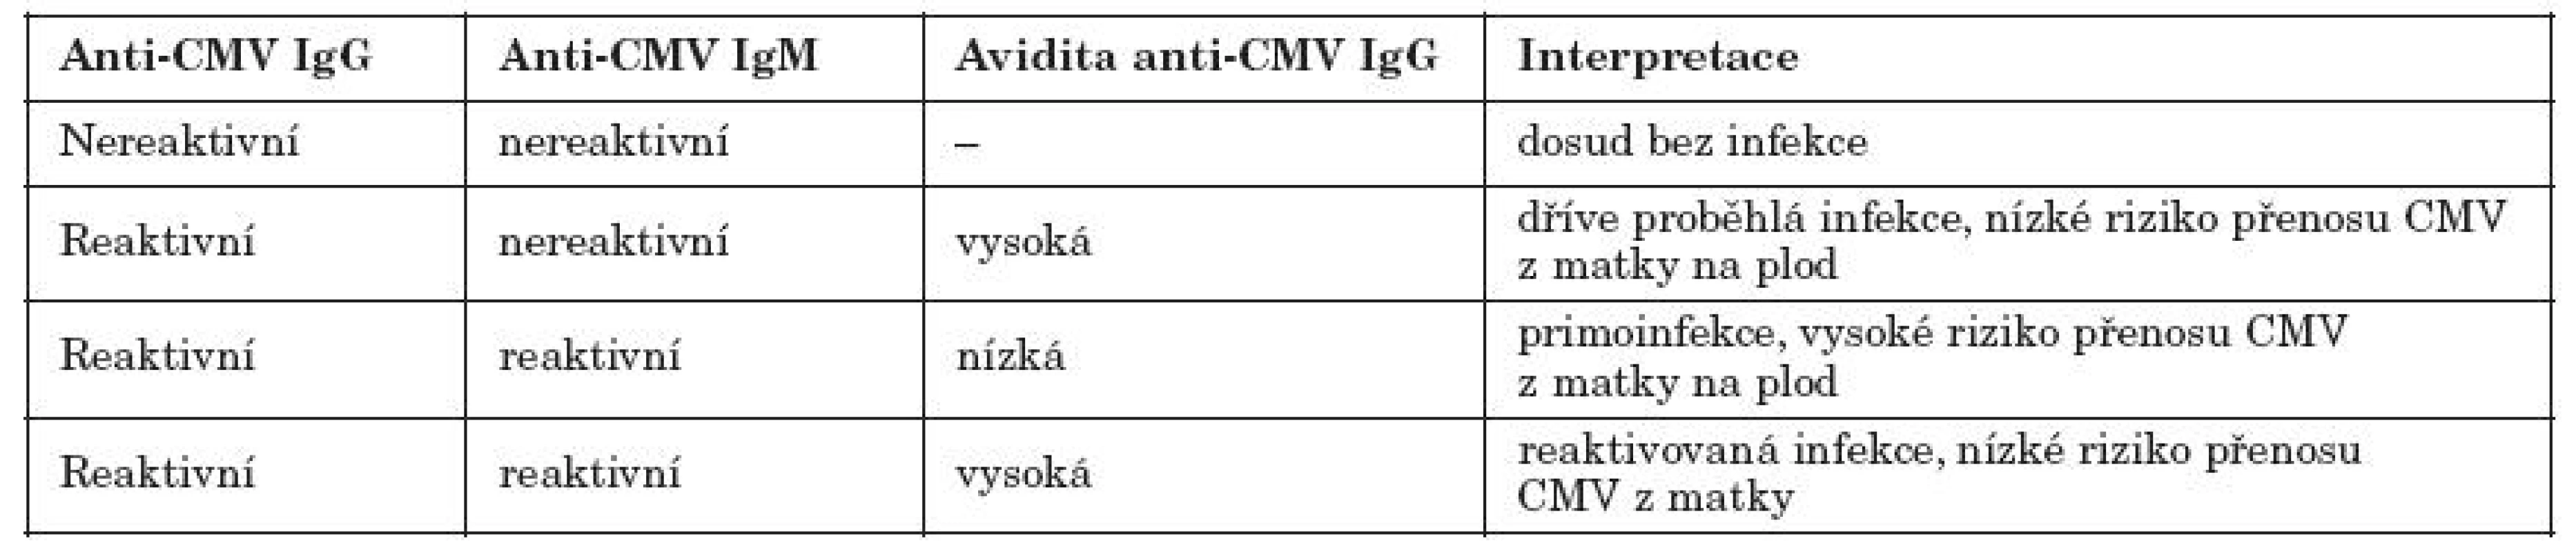 Příklad interpretace nálezů sérologických markerů CMV infekce a avidity CMV IgG ve vztahu ke kongenitální infekci [19]
Table 1. Model interpretation of results: serological markers of CMV infection and CMV IgG avidity in relation to congenital infection [19]